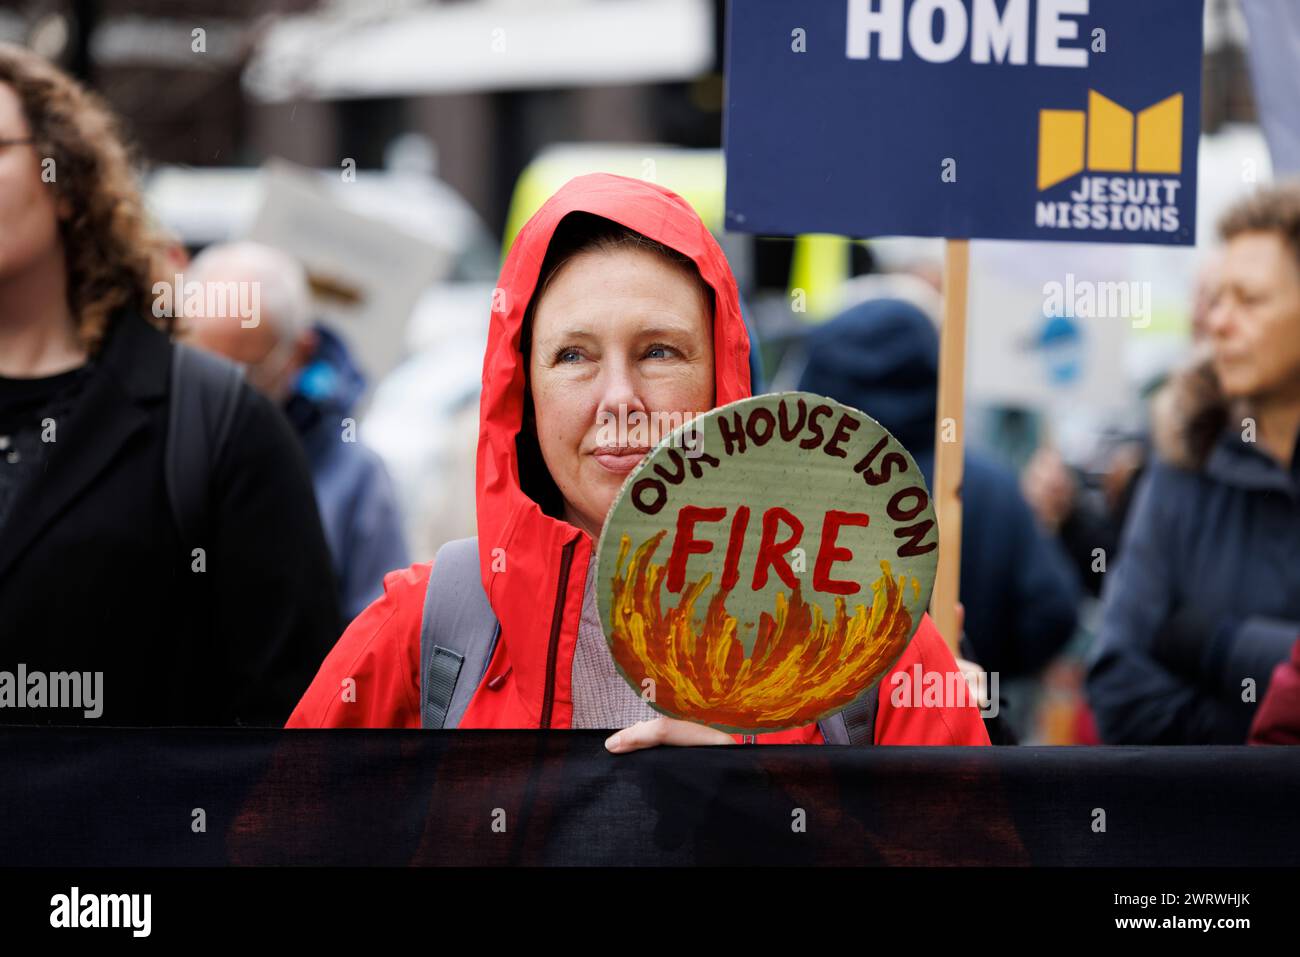 9 décembre 2023. St James Sq., Londres, Royaume-Uni. Manifestation de la Coalition pour la justice climatique devant les bureaux de BP. Banque D'Images